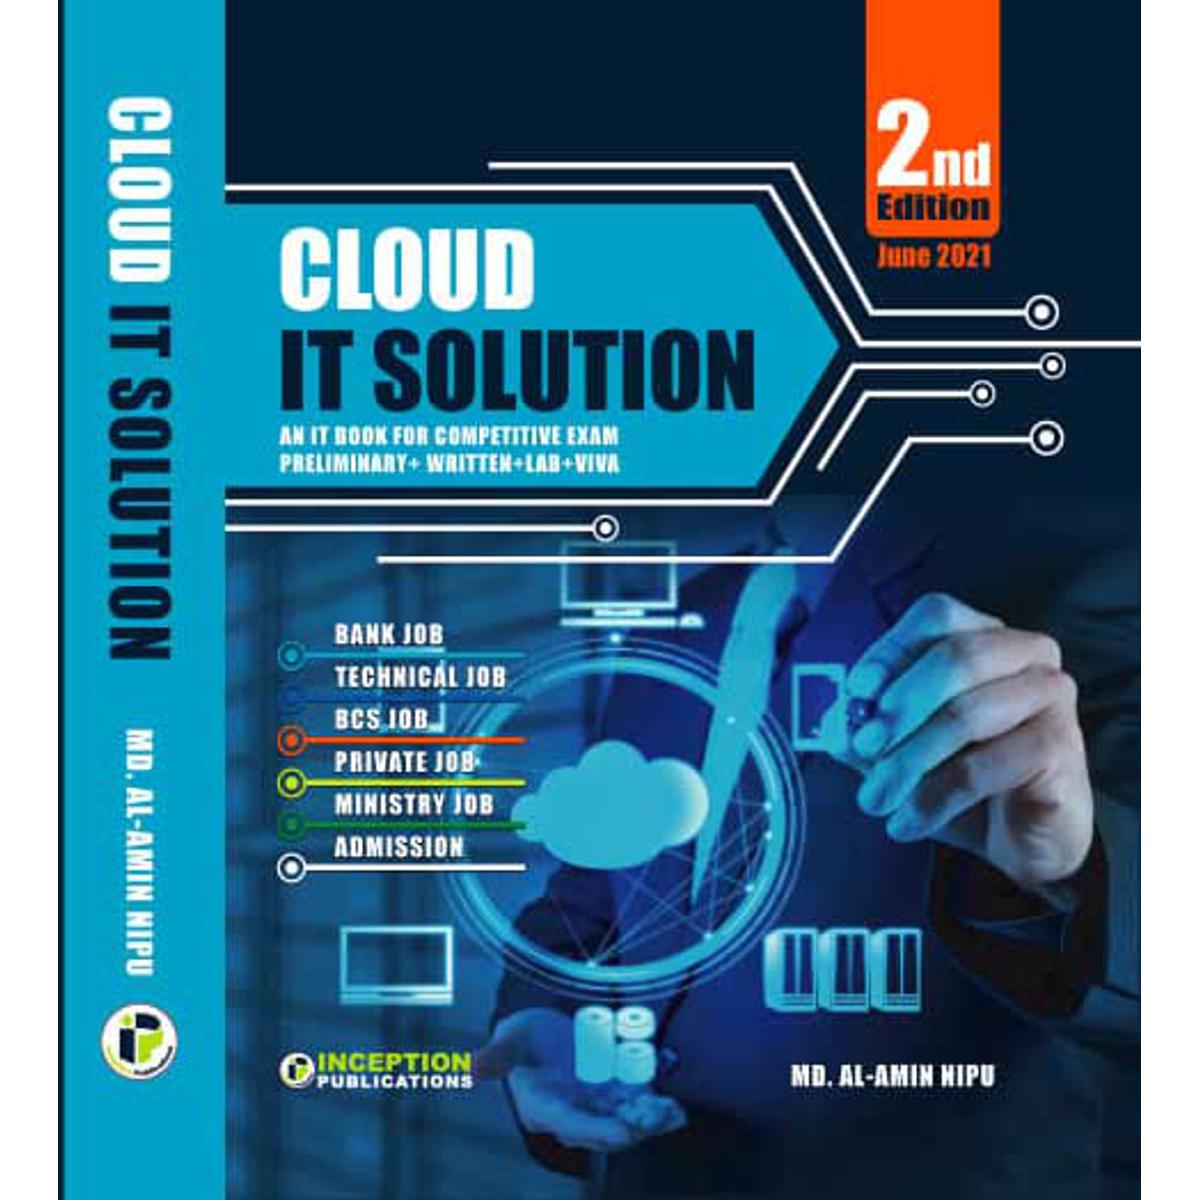 Cloud IT Solution by Md Al-Amin Nipu (2nd Edition)